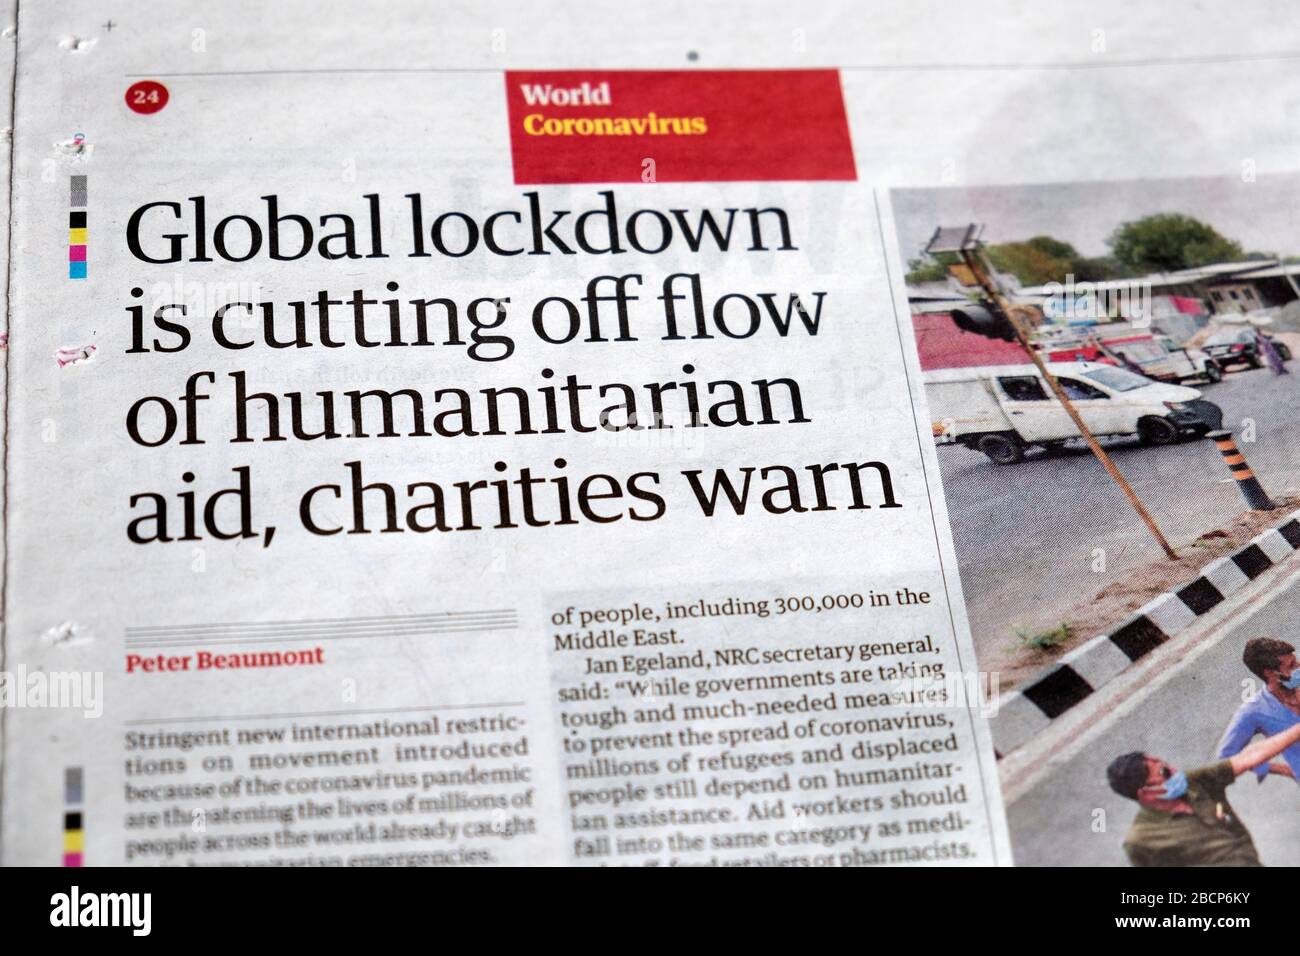 "Die globale Sperrstelle unterbr den Fluss der humanitären Hilfe, wohltätige Organisationen warnen" Coronavirus Artikel auf der Seite Guardian Zeitung März 2020 London UK Stockfoto